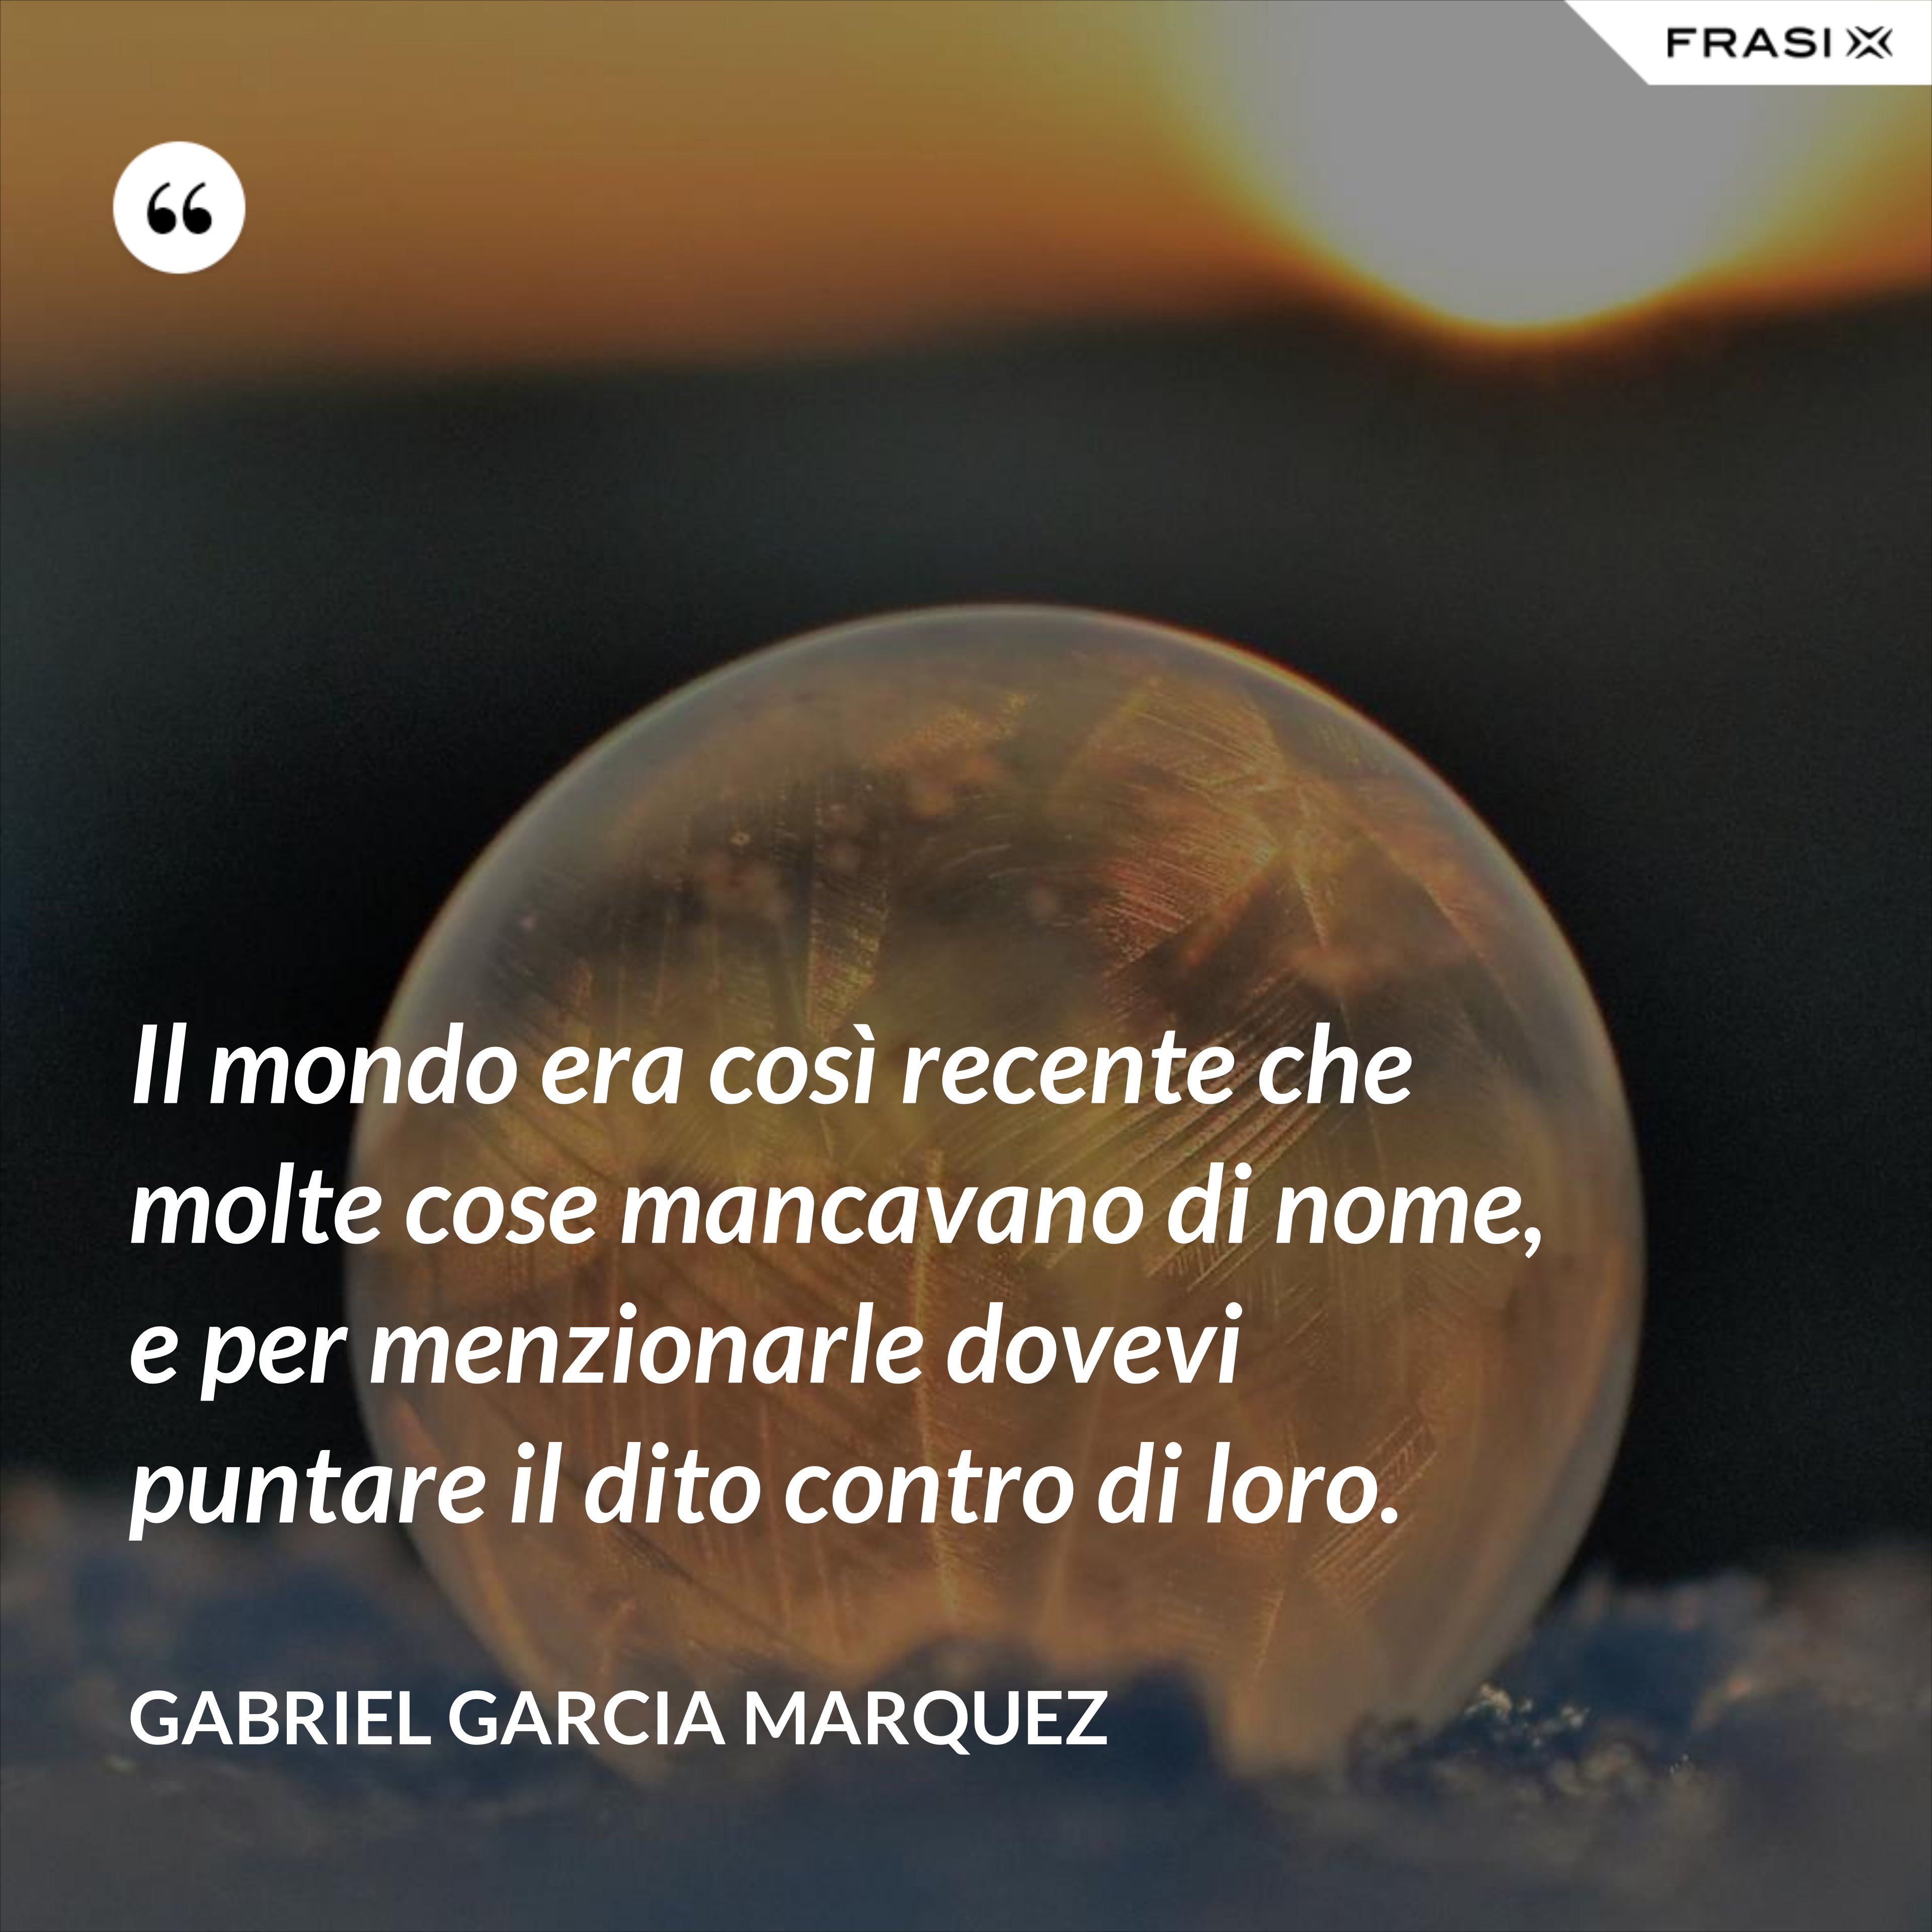 Il mondo era così recente che molte cose mancavano di nome, e per menzionarle dovevi puntare il dito contro di loro. - Gabriel Garcia Marquez